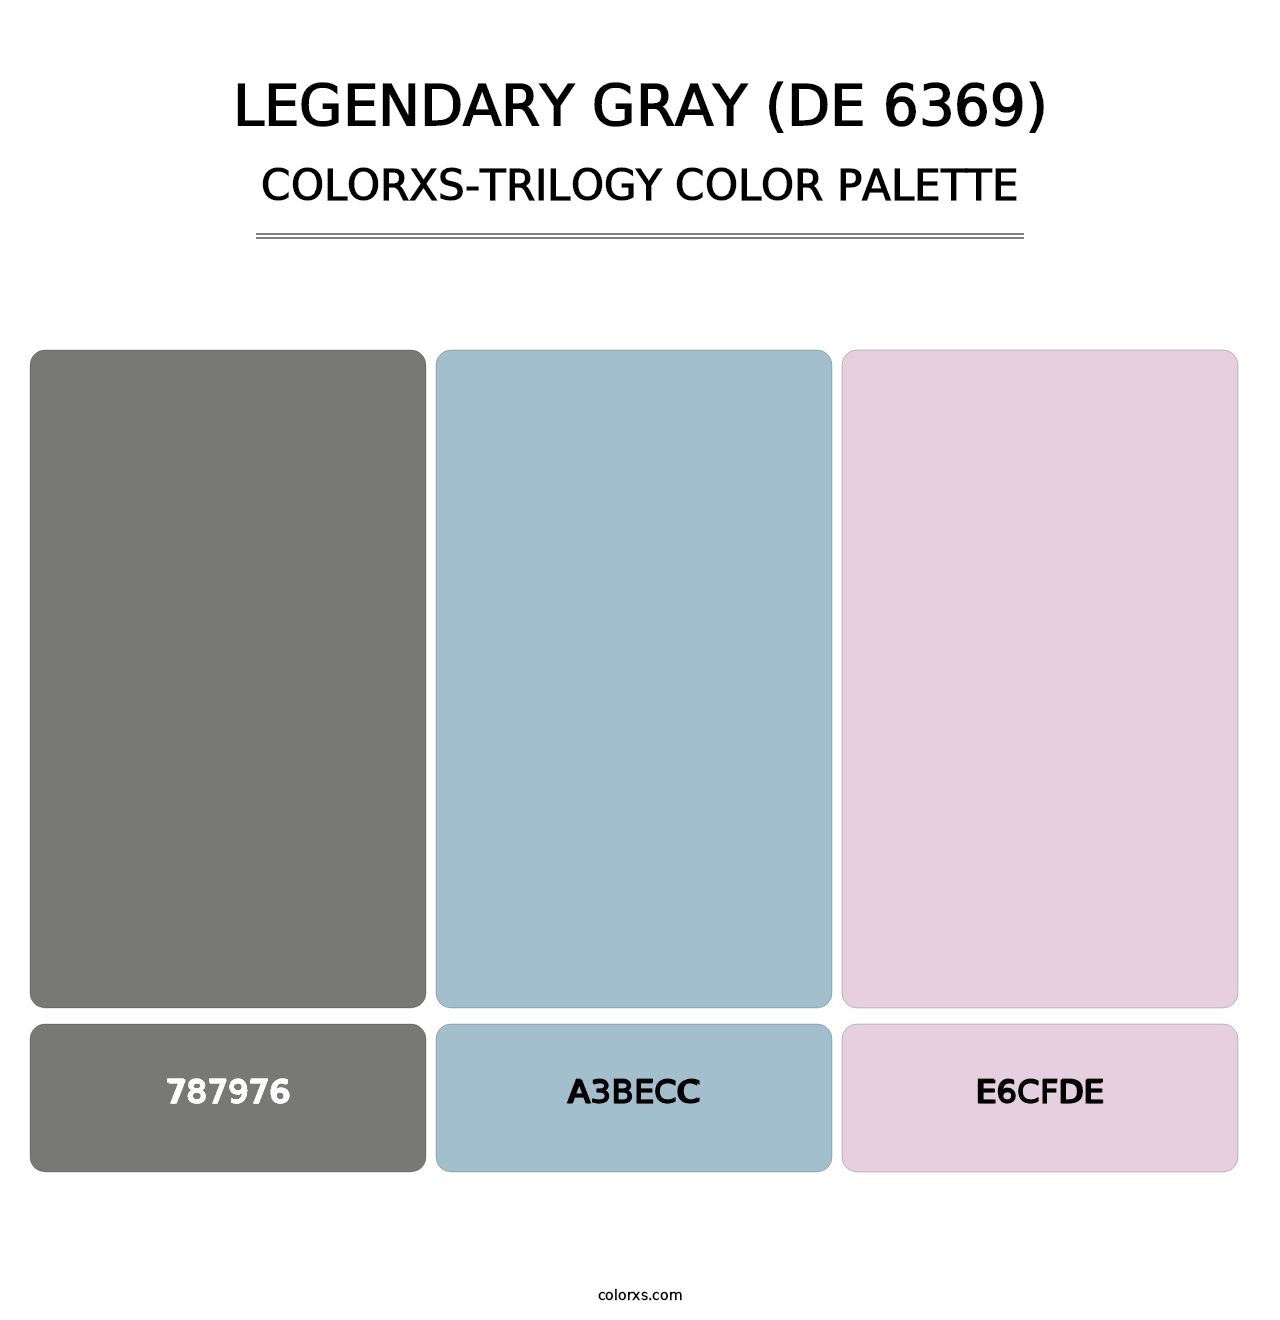 Legendary Gray (DE 6369) - Colorxs Trilogy Palette